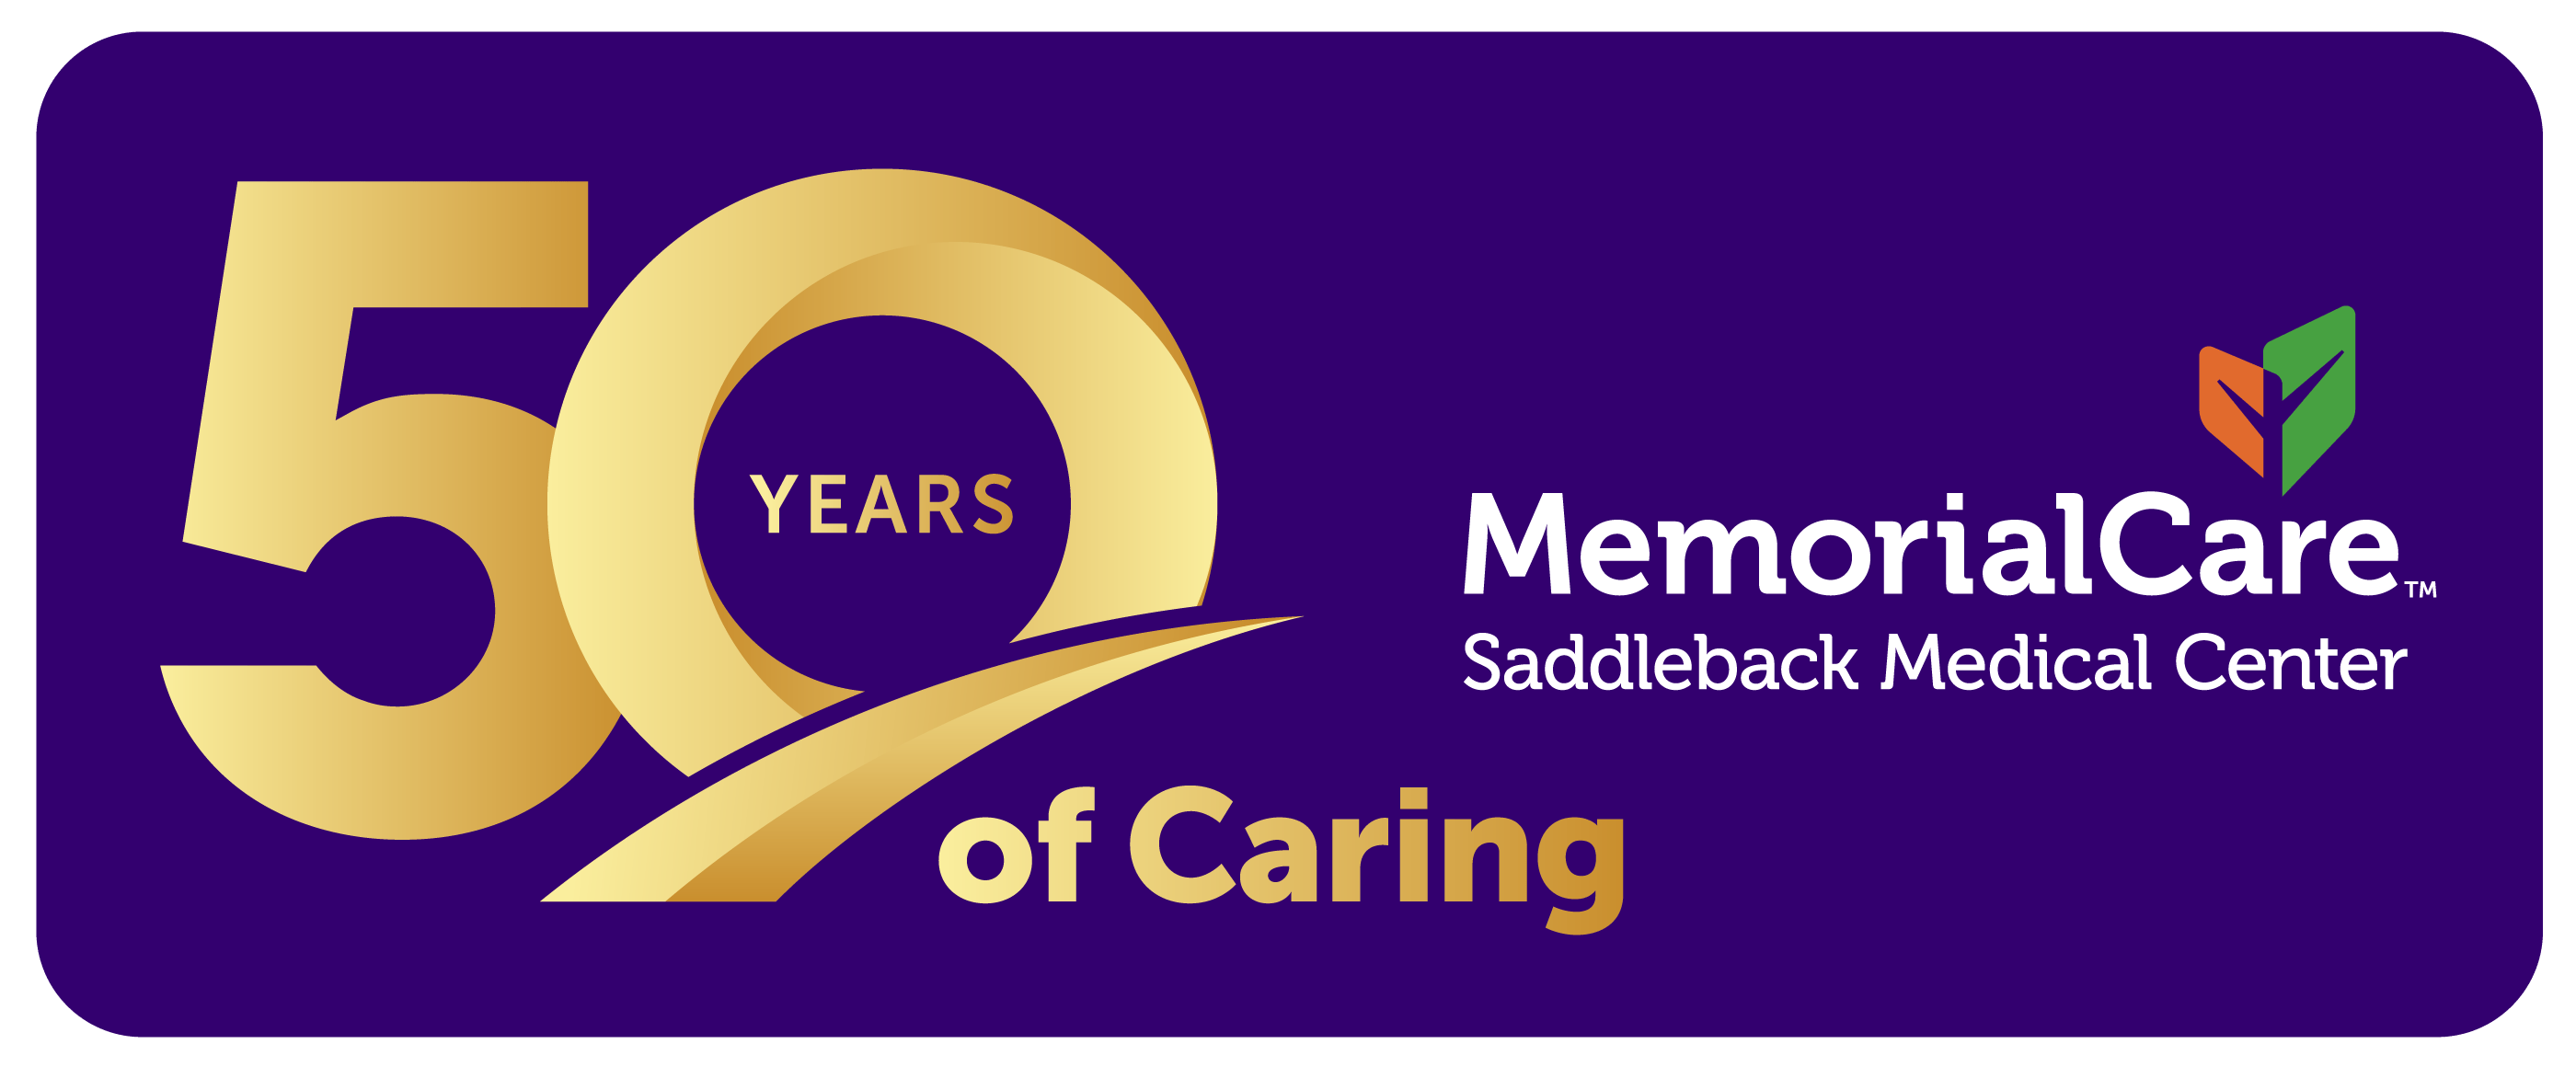 Saddleback Memorial Care